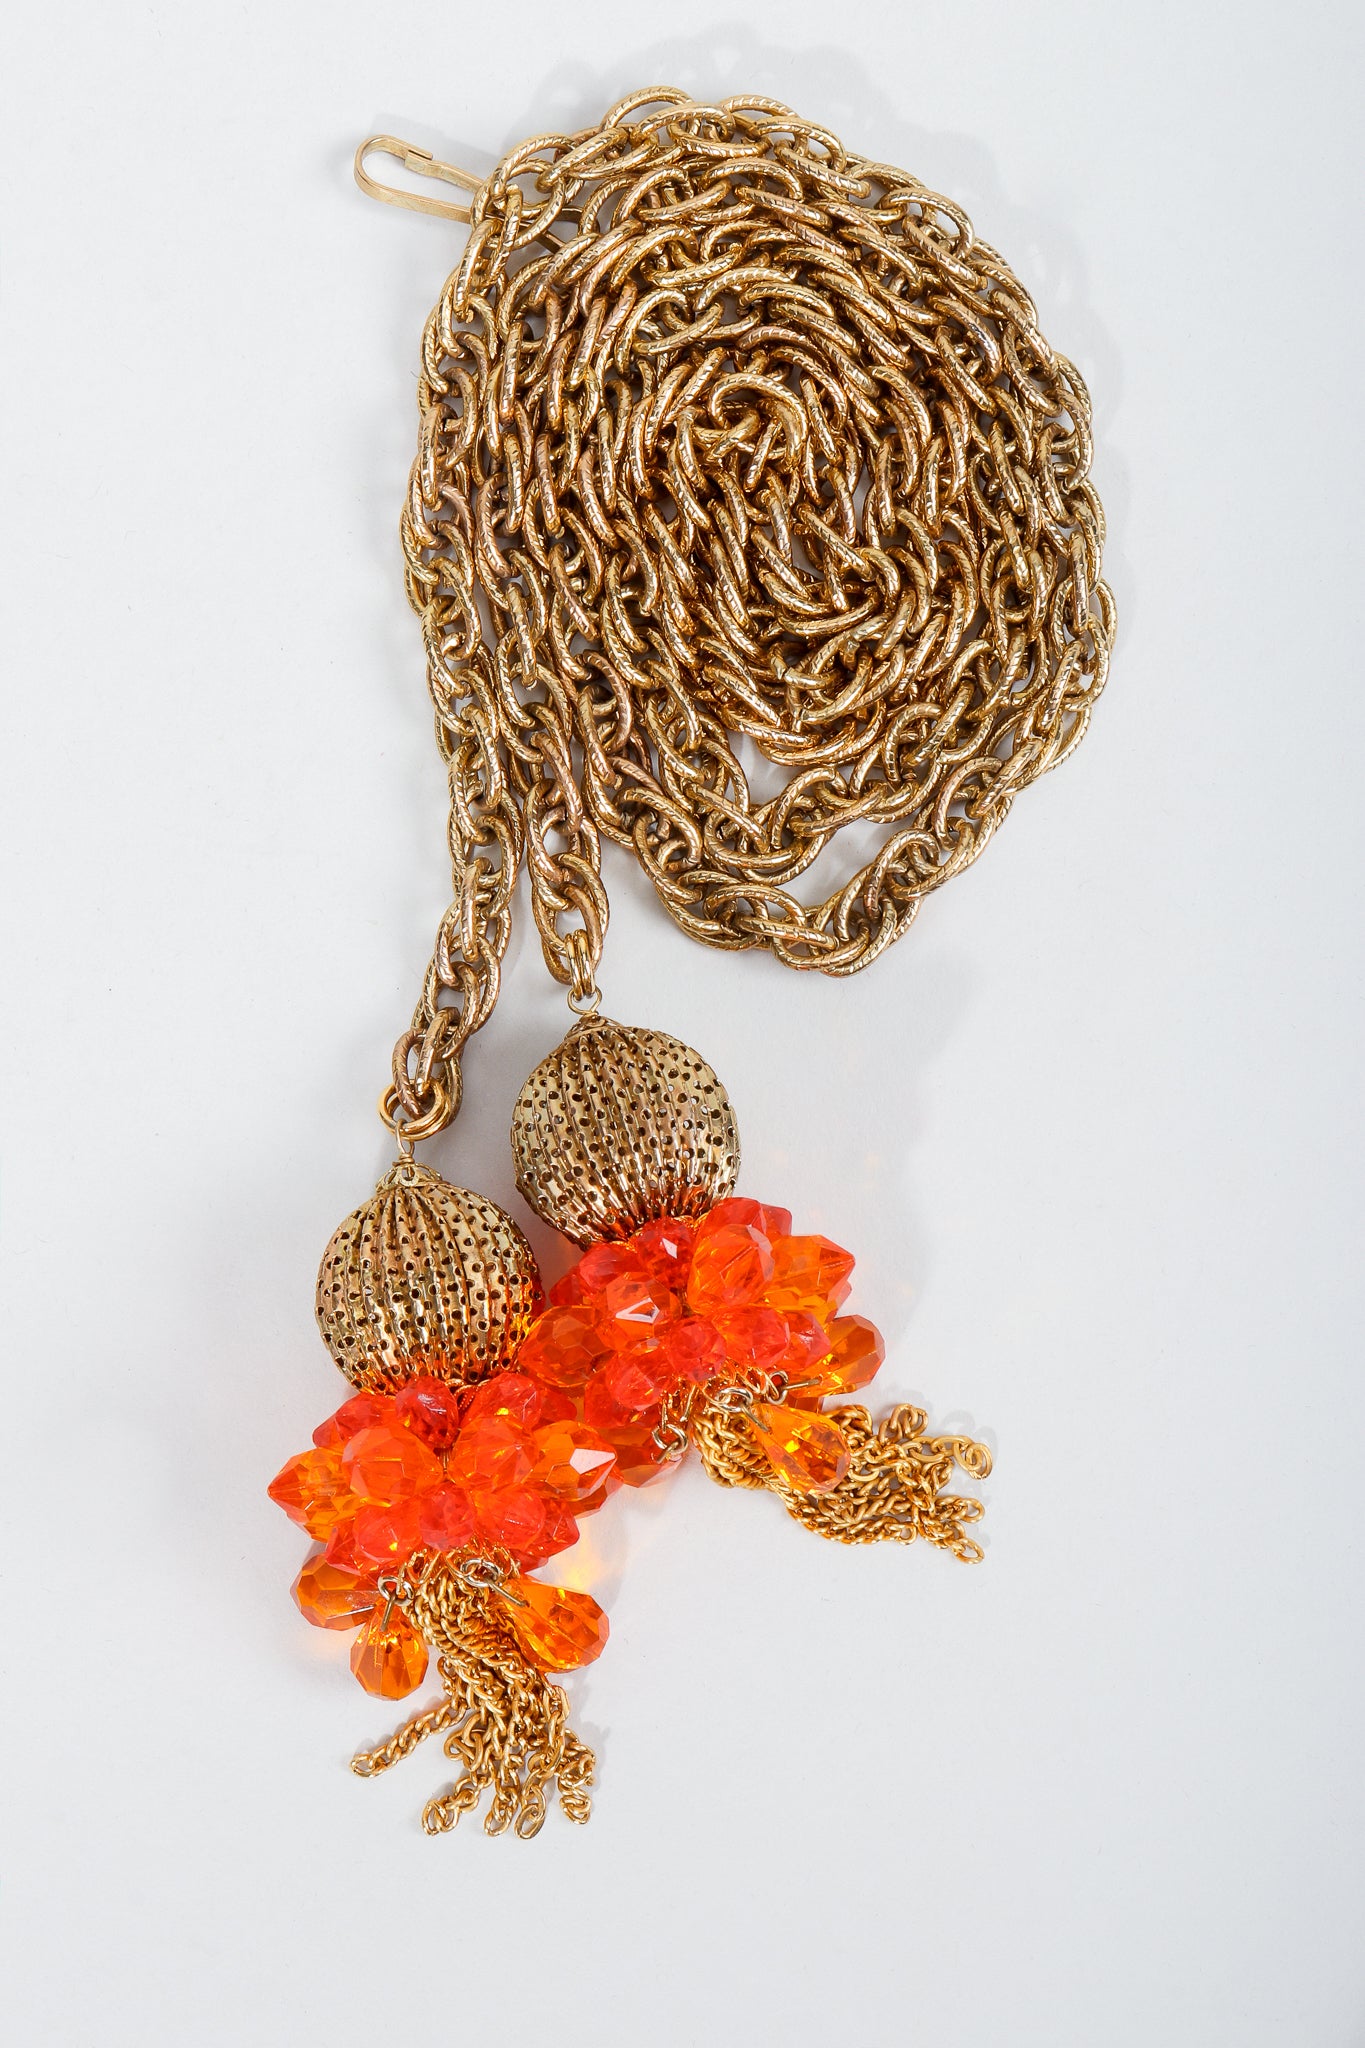 Vintage Unsigned Fiery Orange Beaded Tassel Wrap Necklace or Belt on Grey